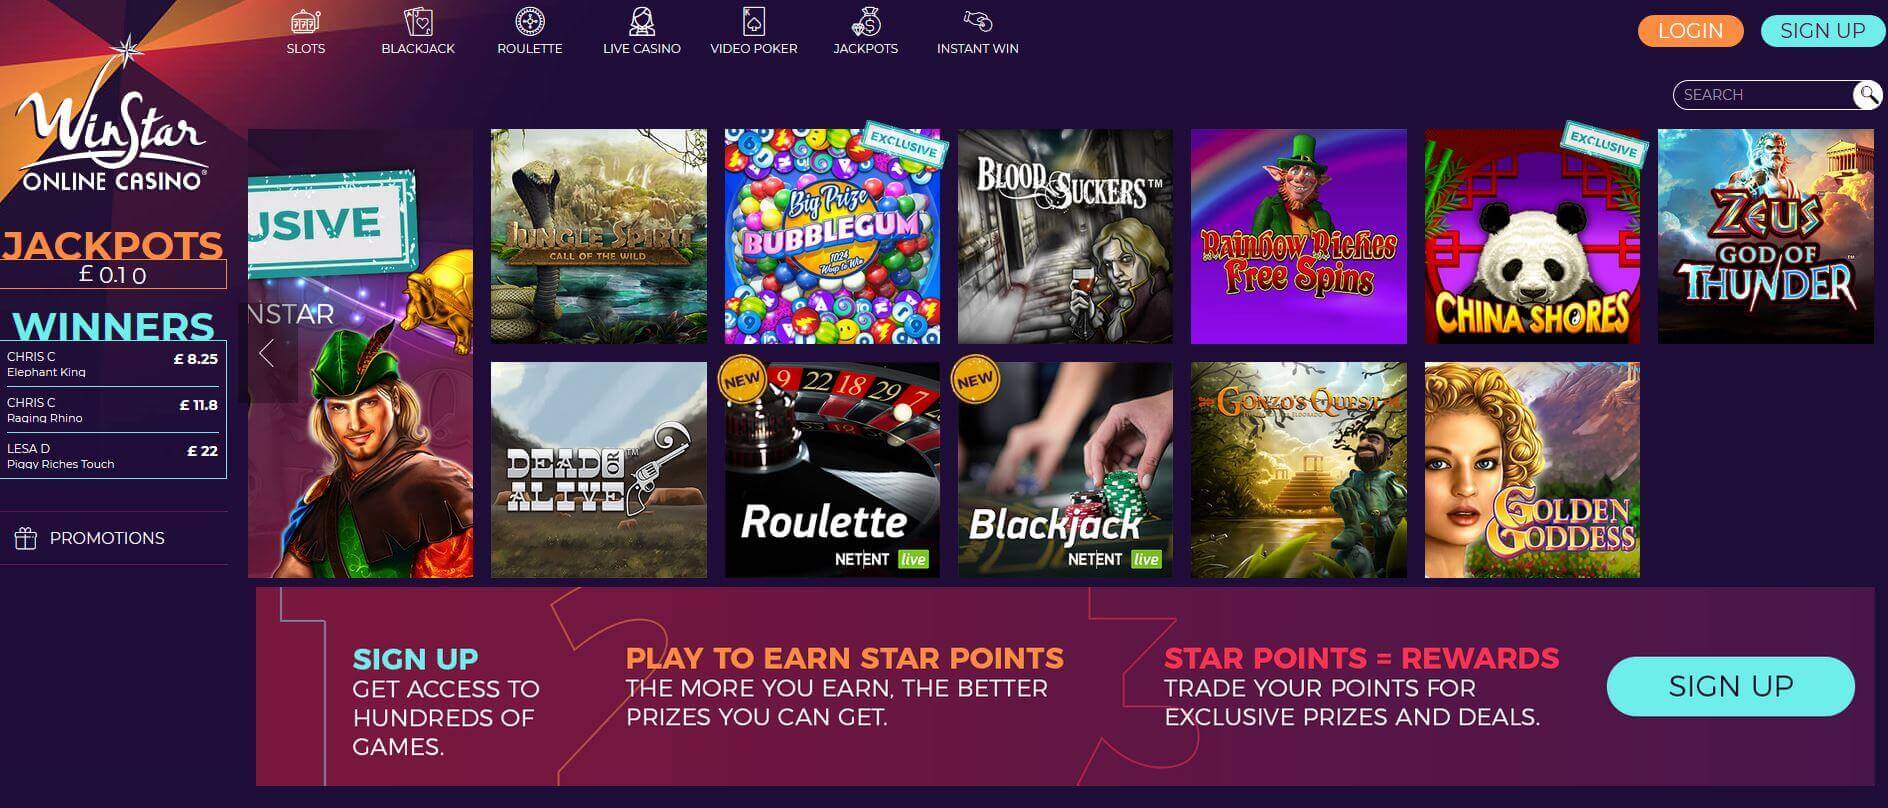 WinStar Casino Homepage